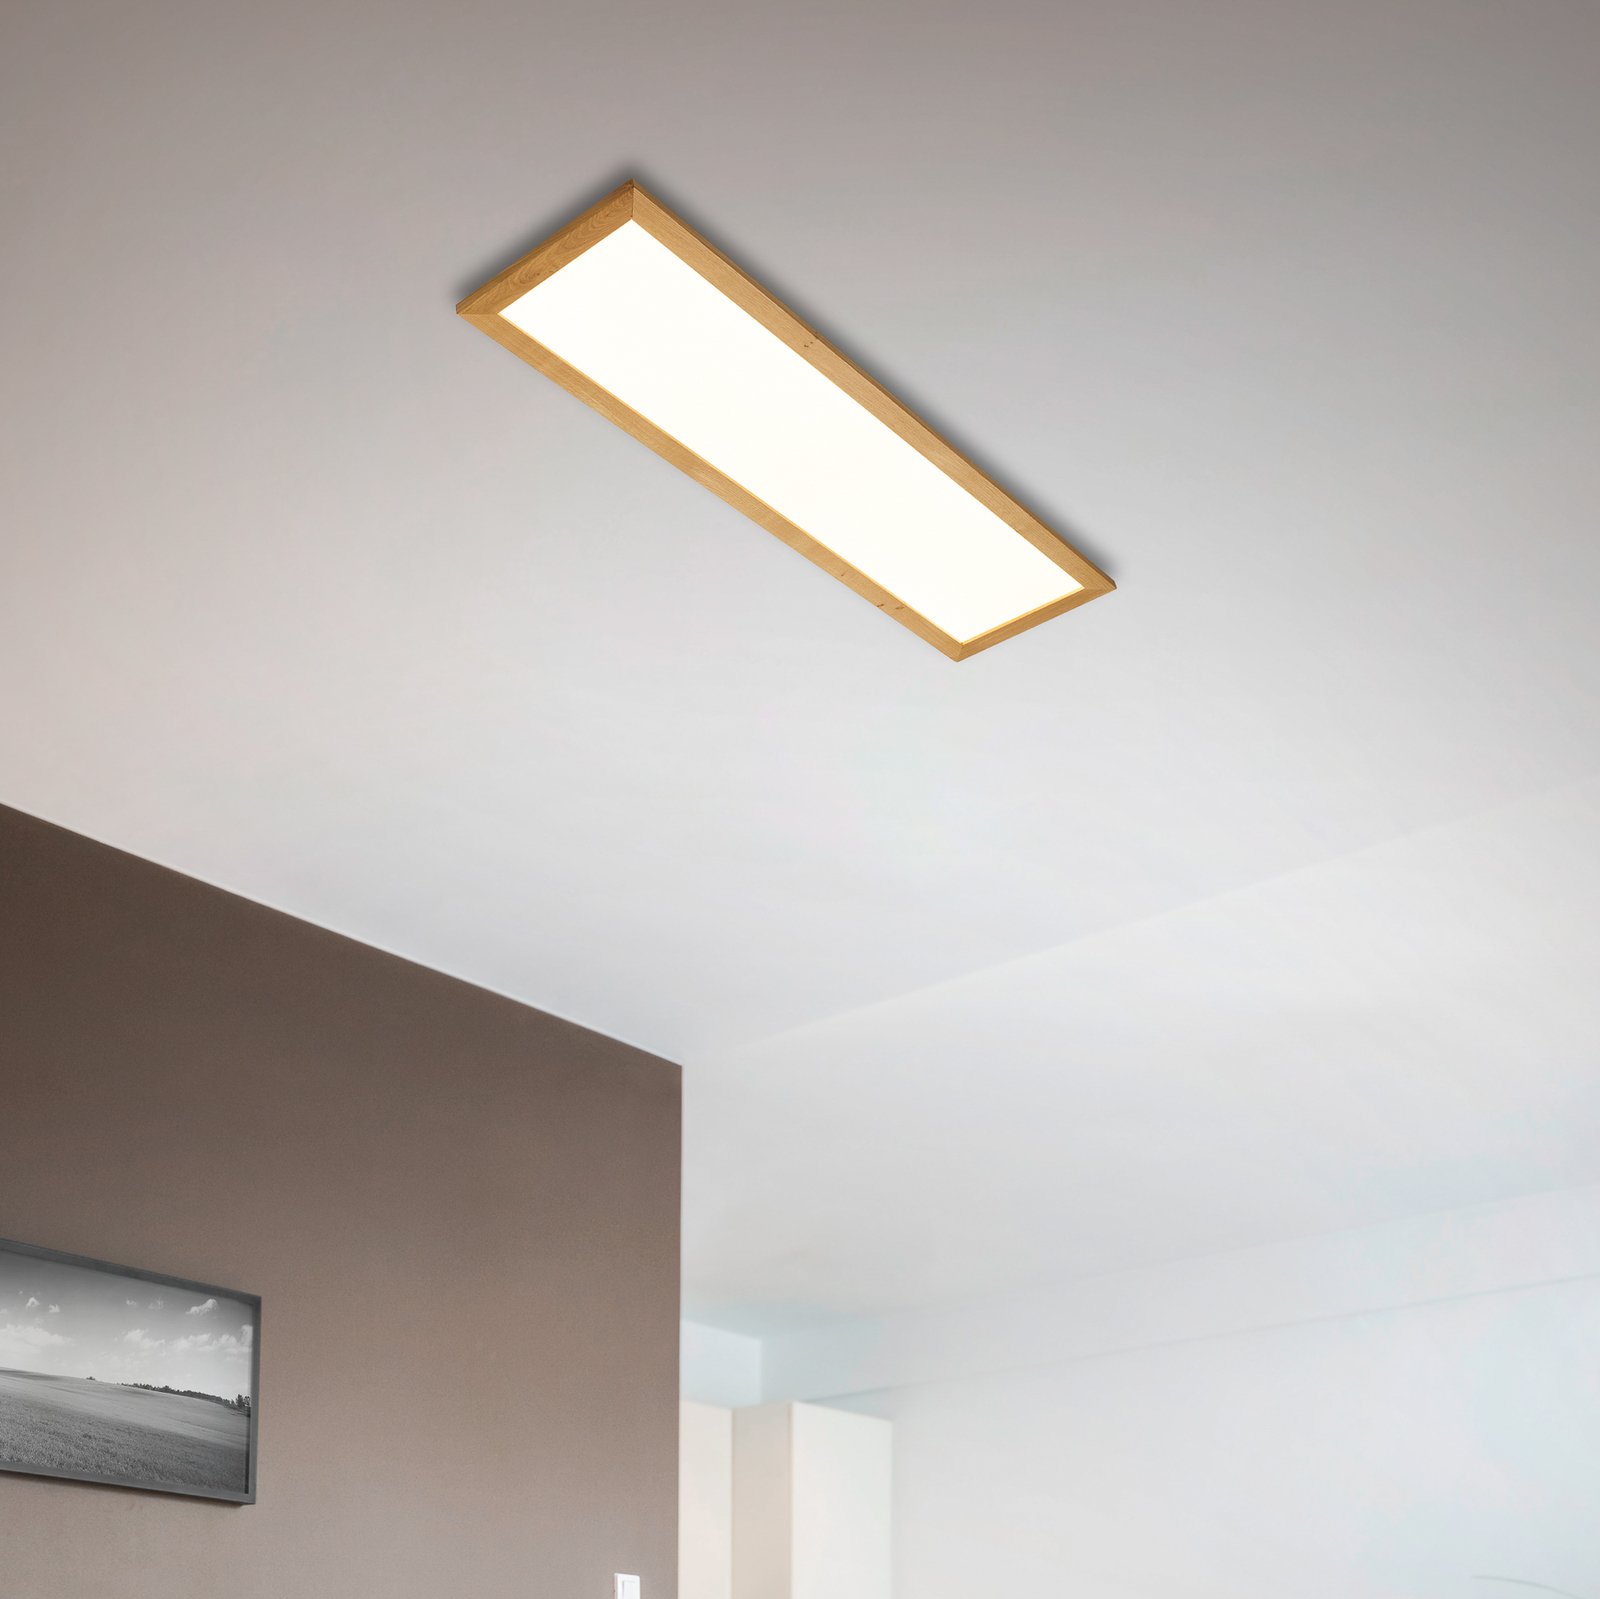 Quitani Aurinor panel LED, roble natural, 125 cm